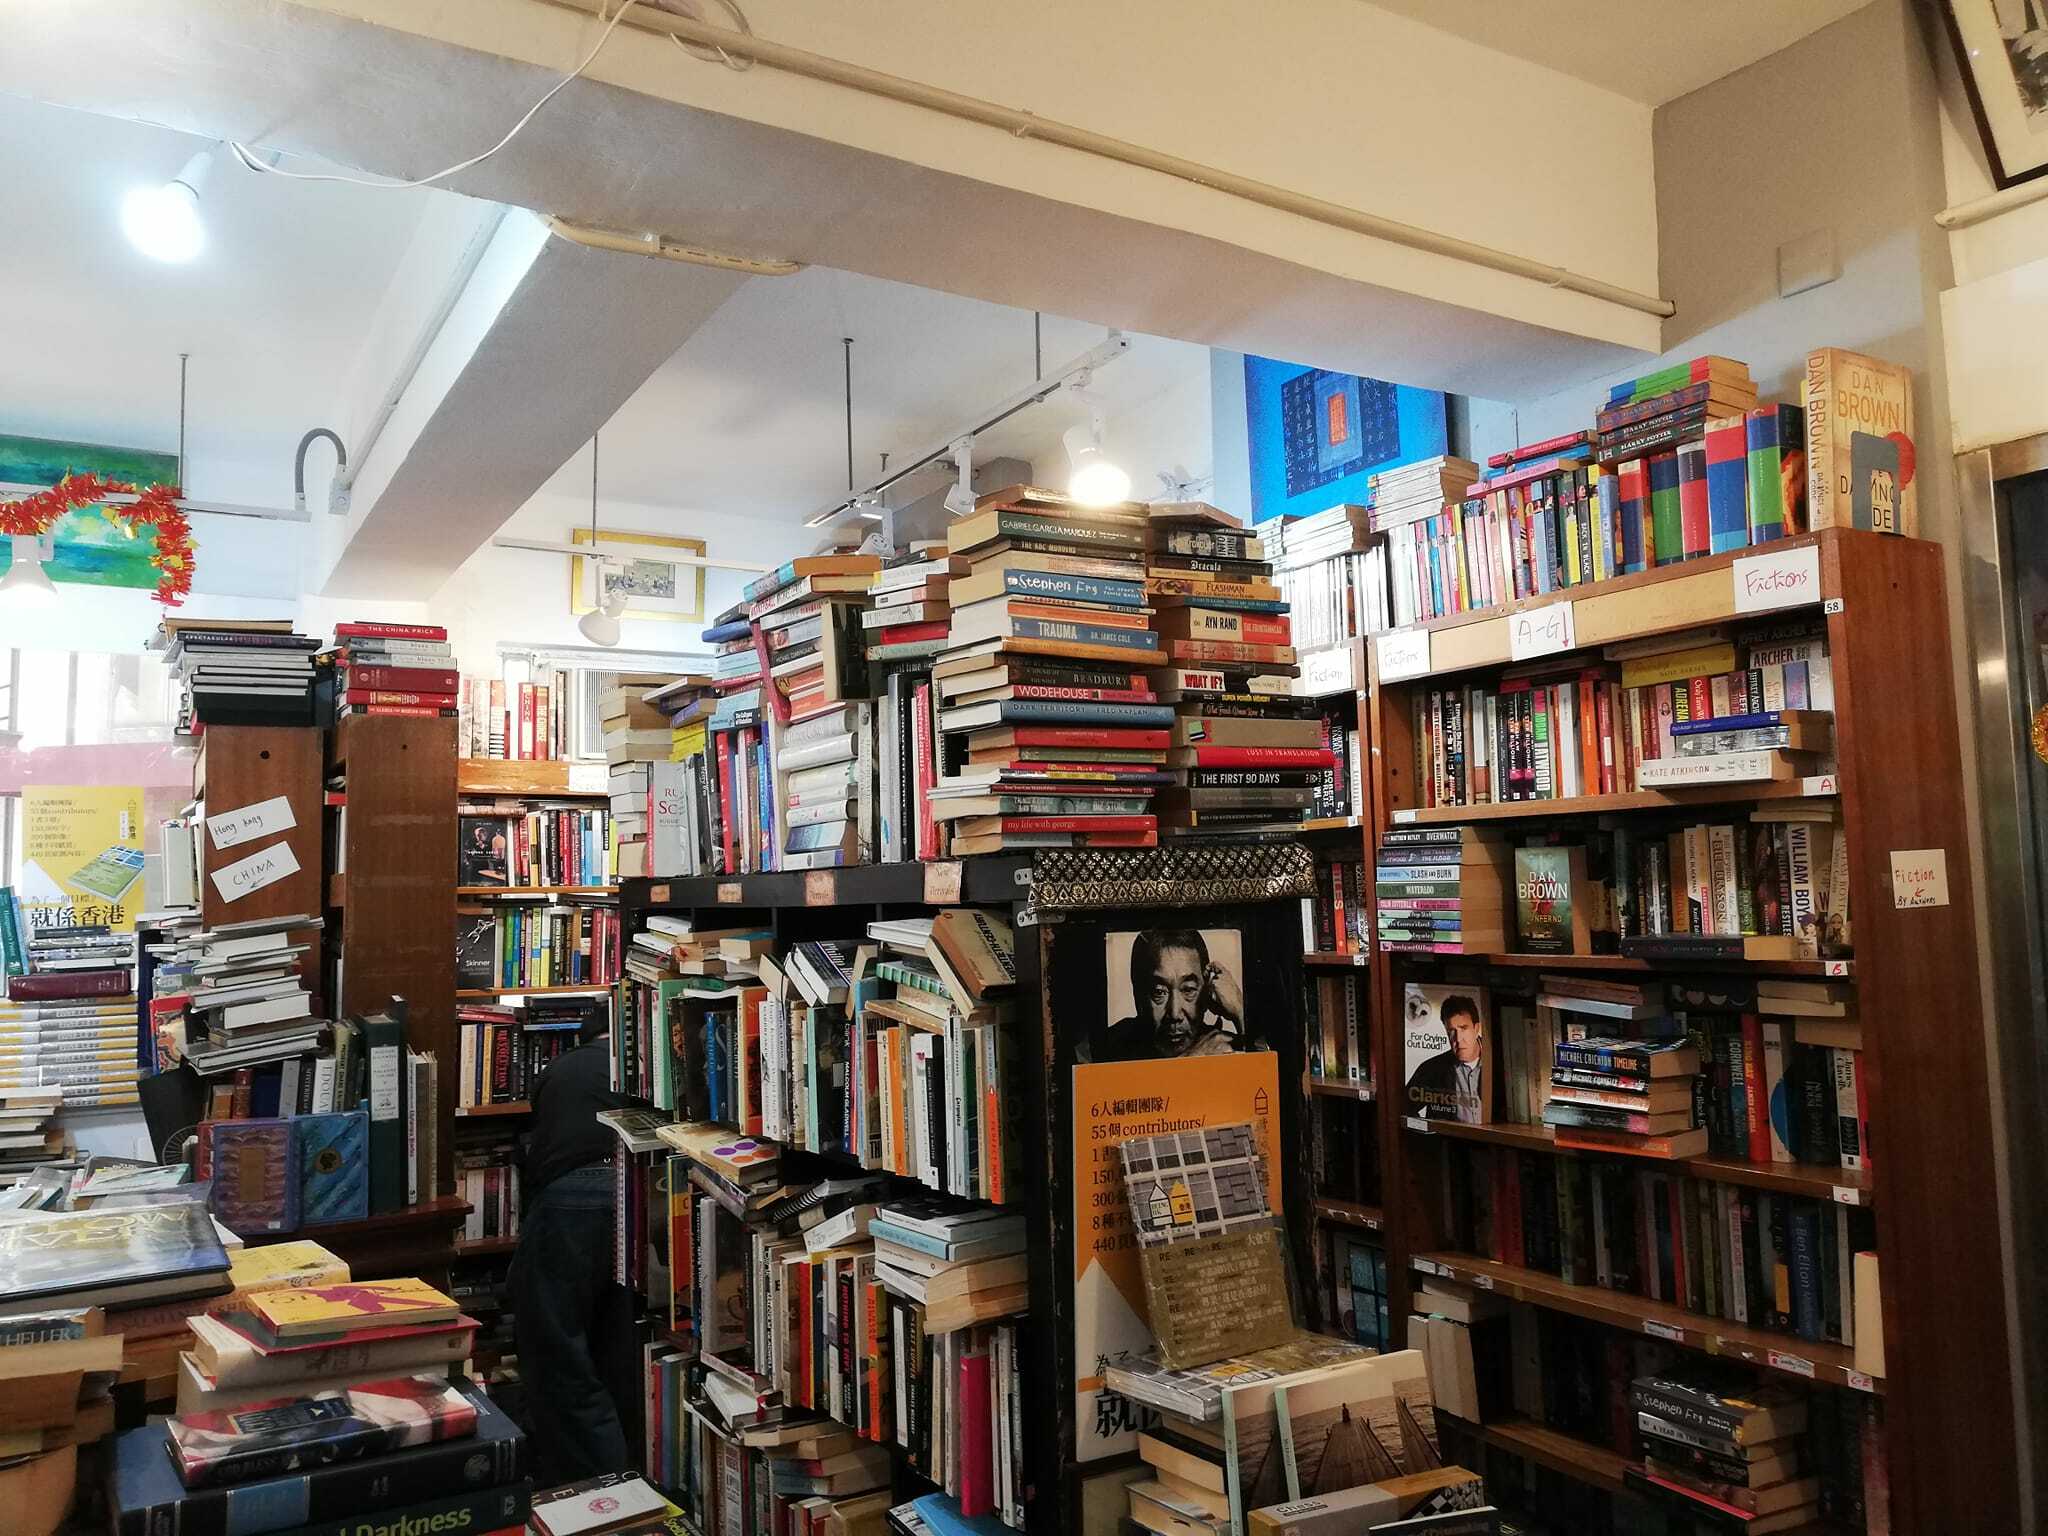 Online second hand bookstore runs pop-up in Hong Kong